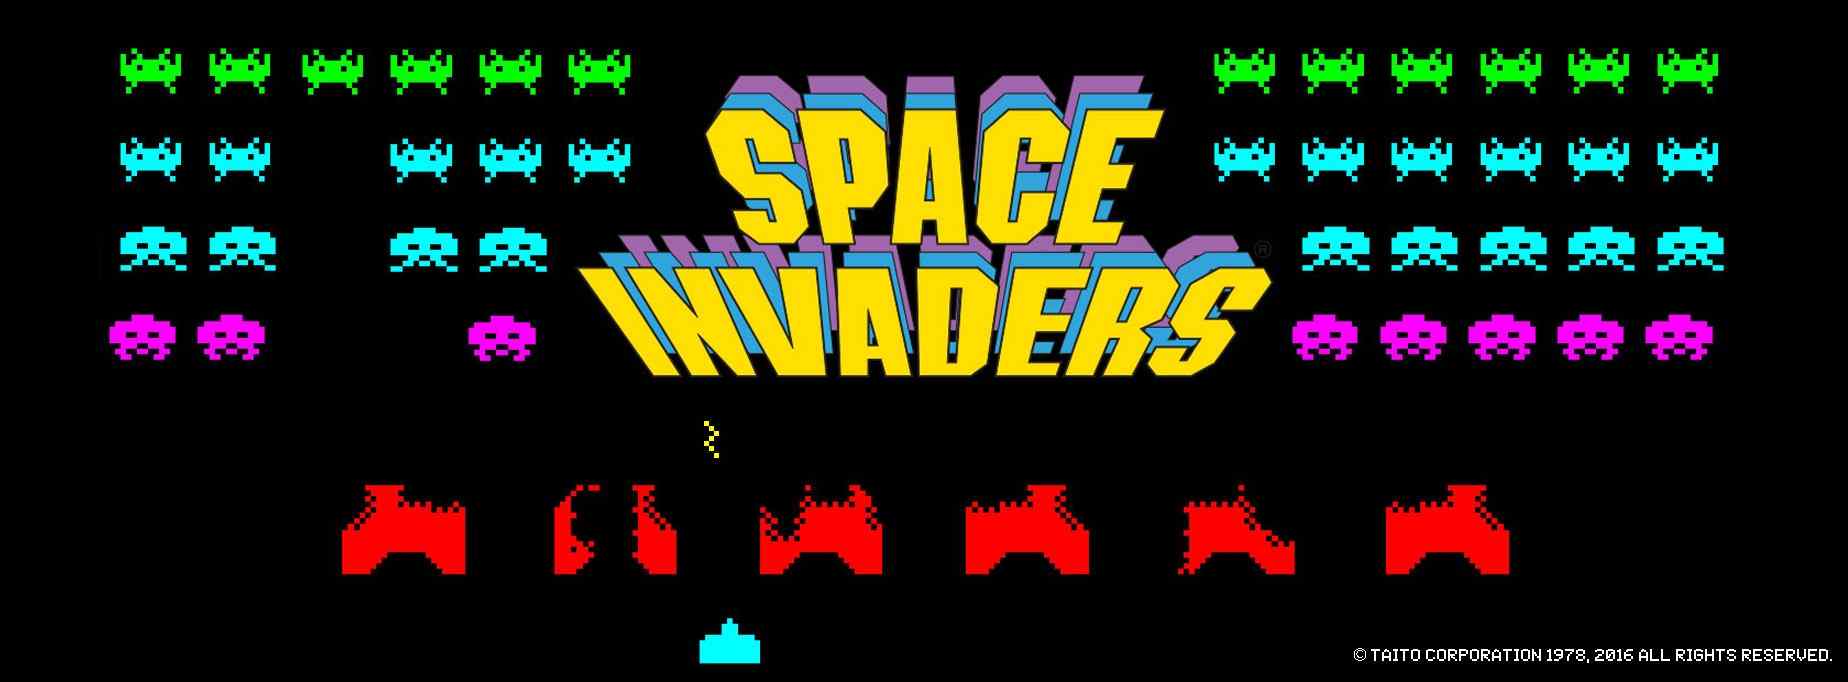 Space invaders' pixel art